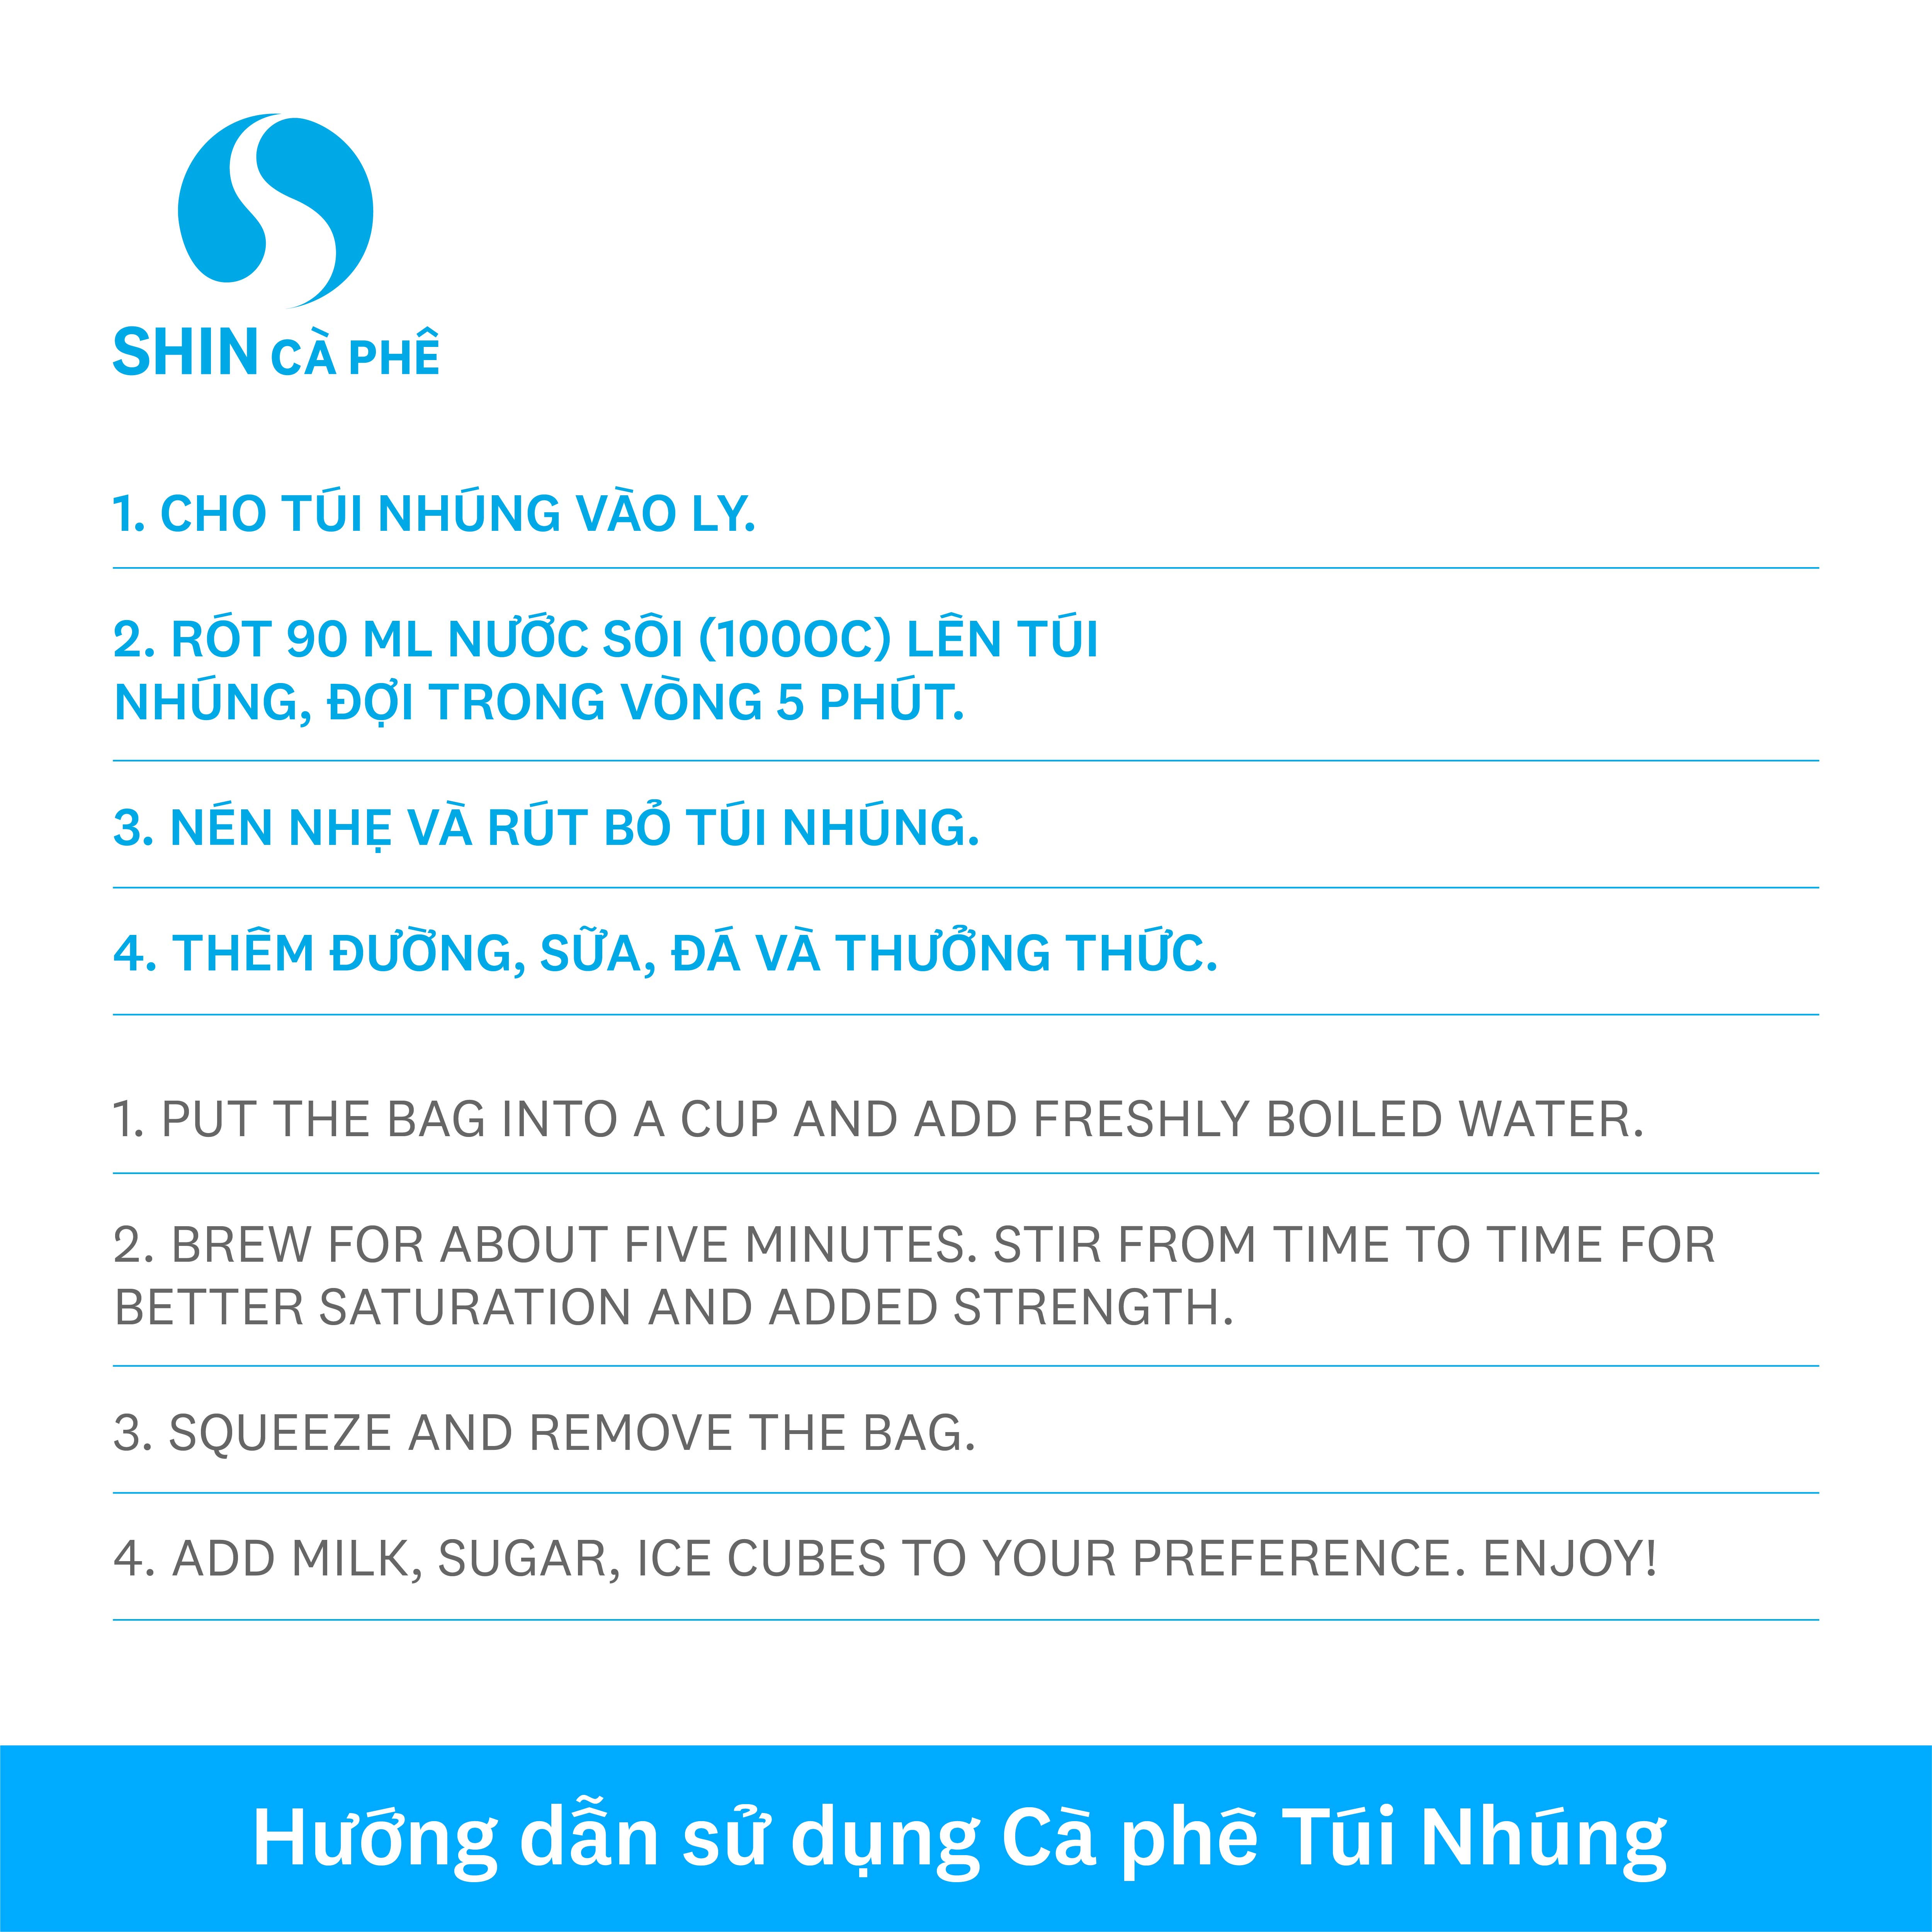 SHIN Cà Phê - Cà phê túi nhúng đặc sản Đà Lạt Blend hộp 10 gói